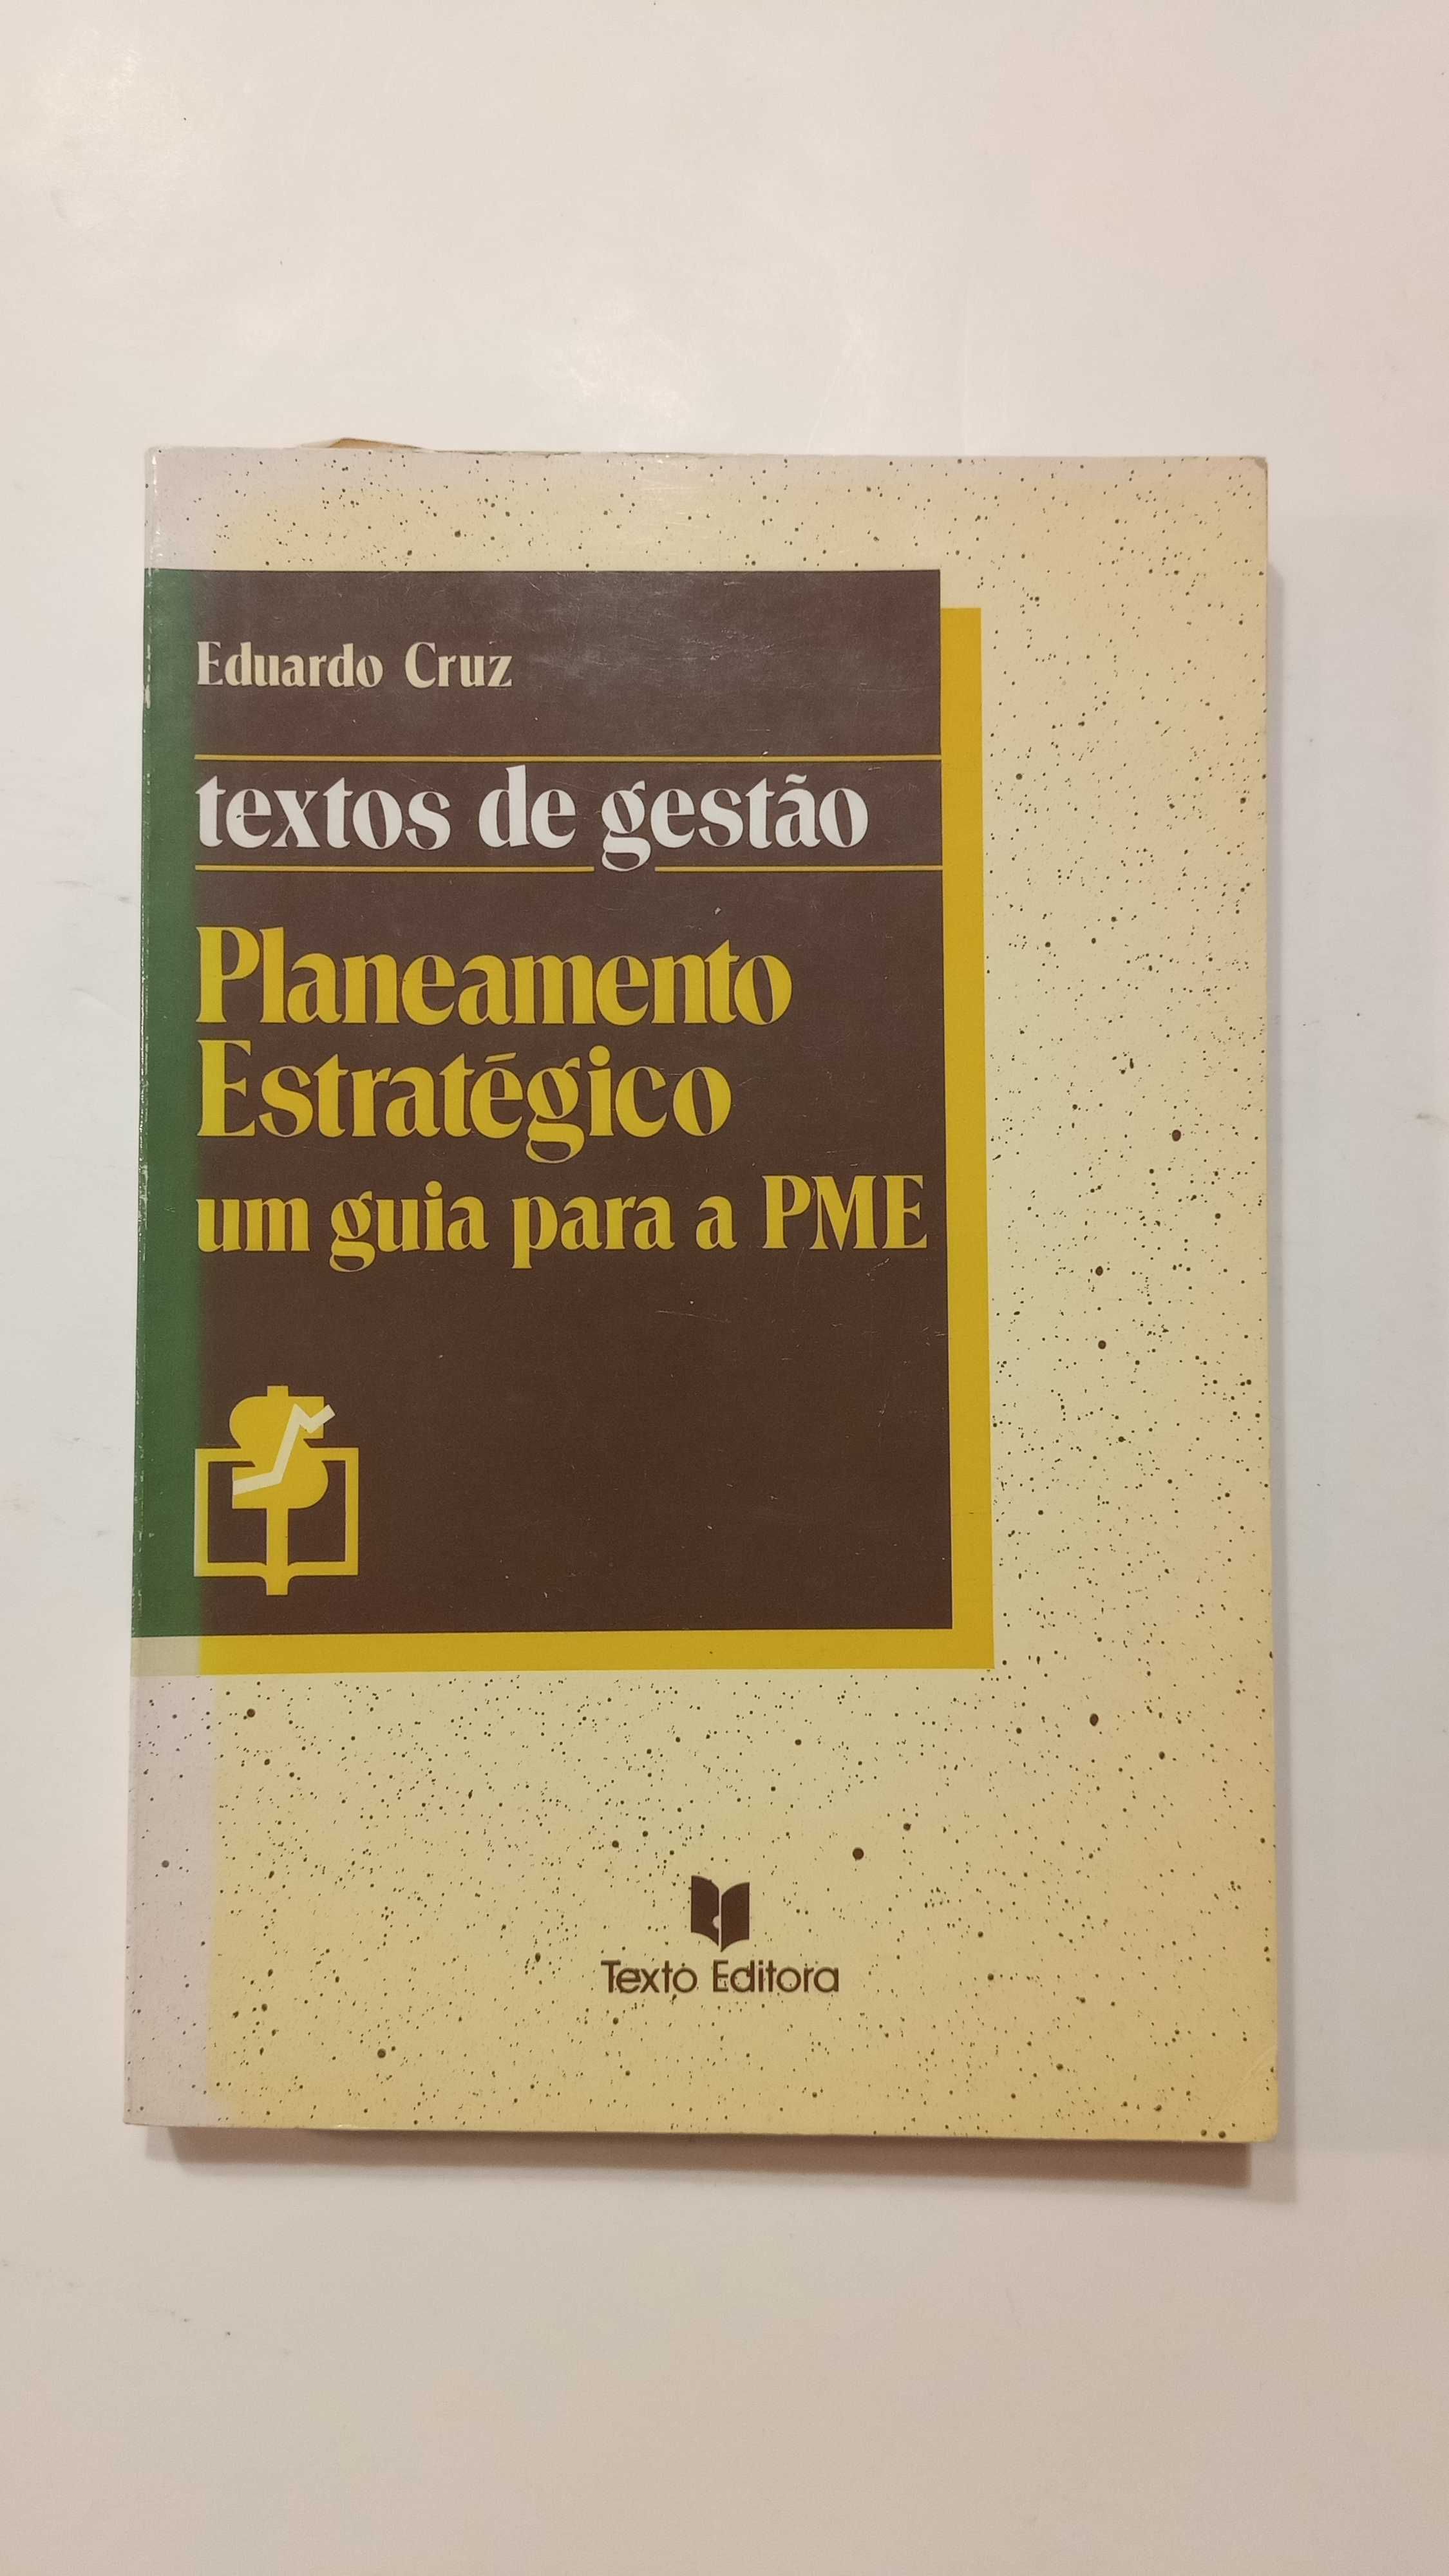 Planeamento Estratégico -Um guia para a PME de Eduardo Cruz